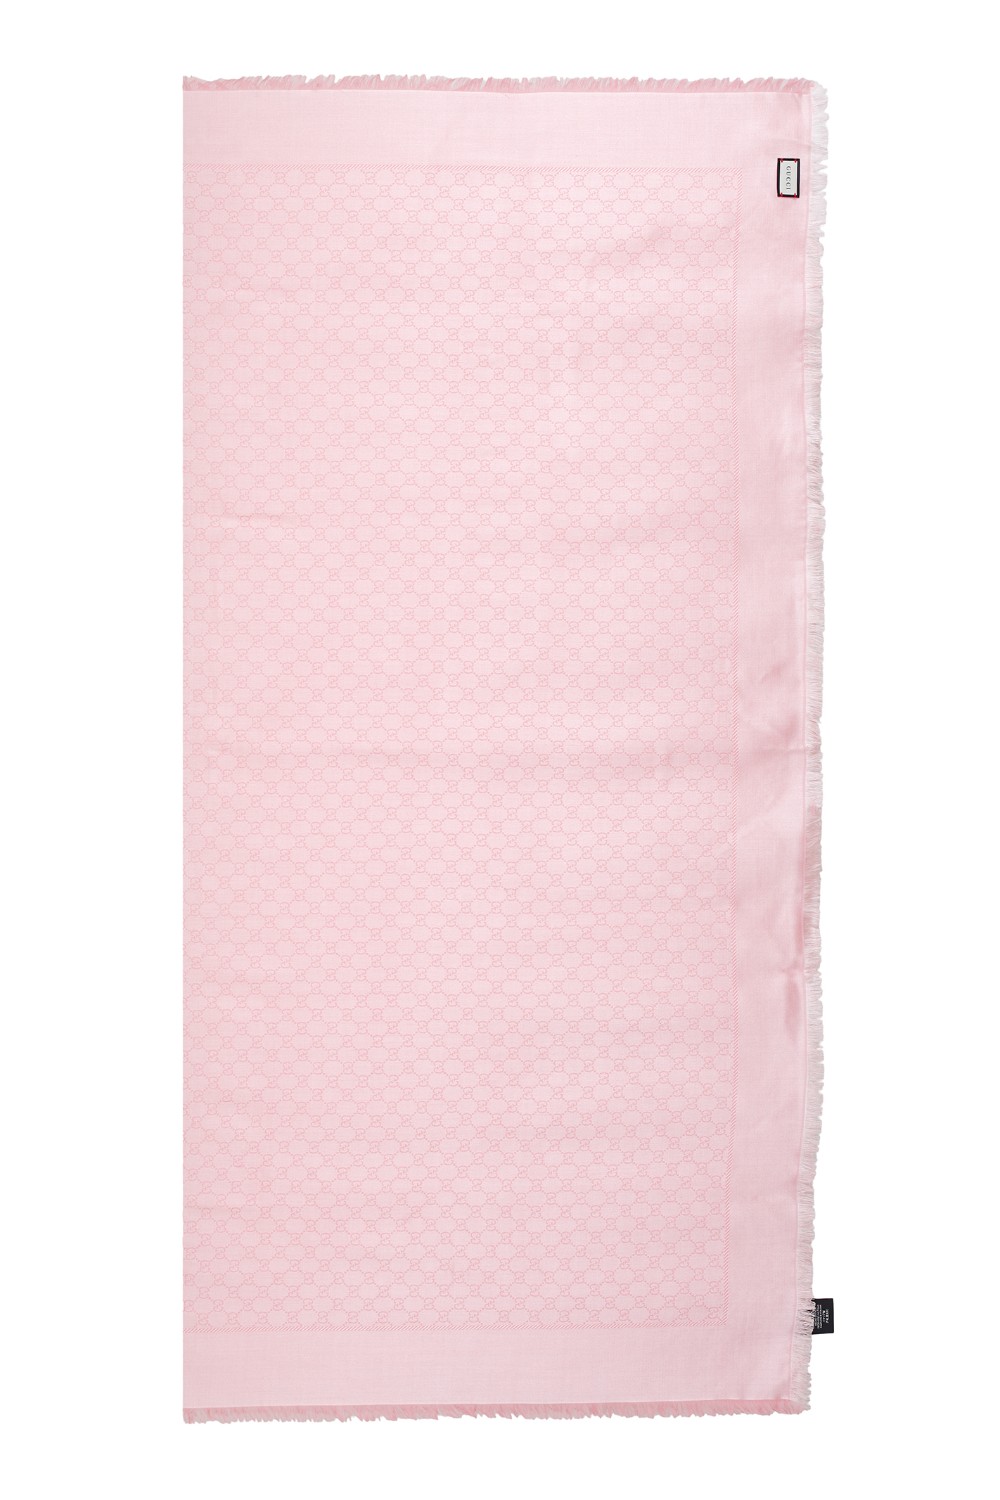 shop GUCCI Saldi Stola: Gucci scialle rosa in lana e seta jacquard con motivo GG.
Dettaglio frange.
Dimensioni: 140cm x 140cm.
Composizione: 65% seta, 35% lana.
Made in Italy.. 406236 3G632-6800 number 5449878